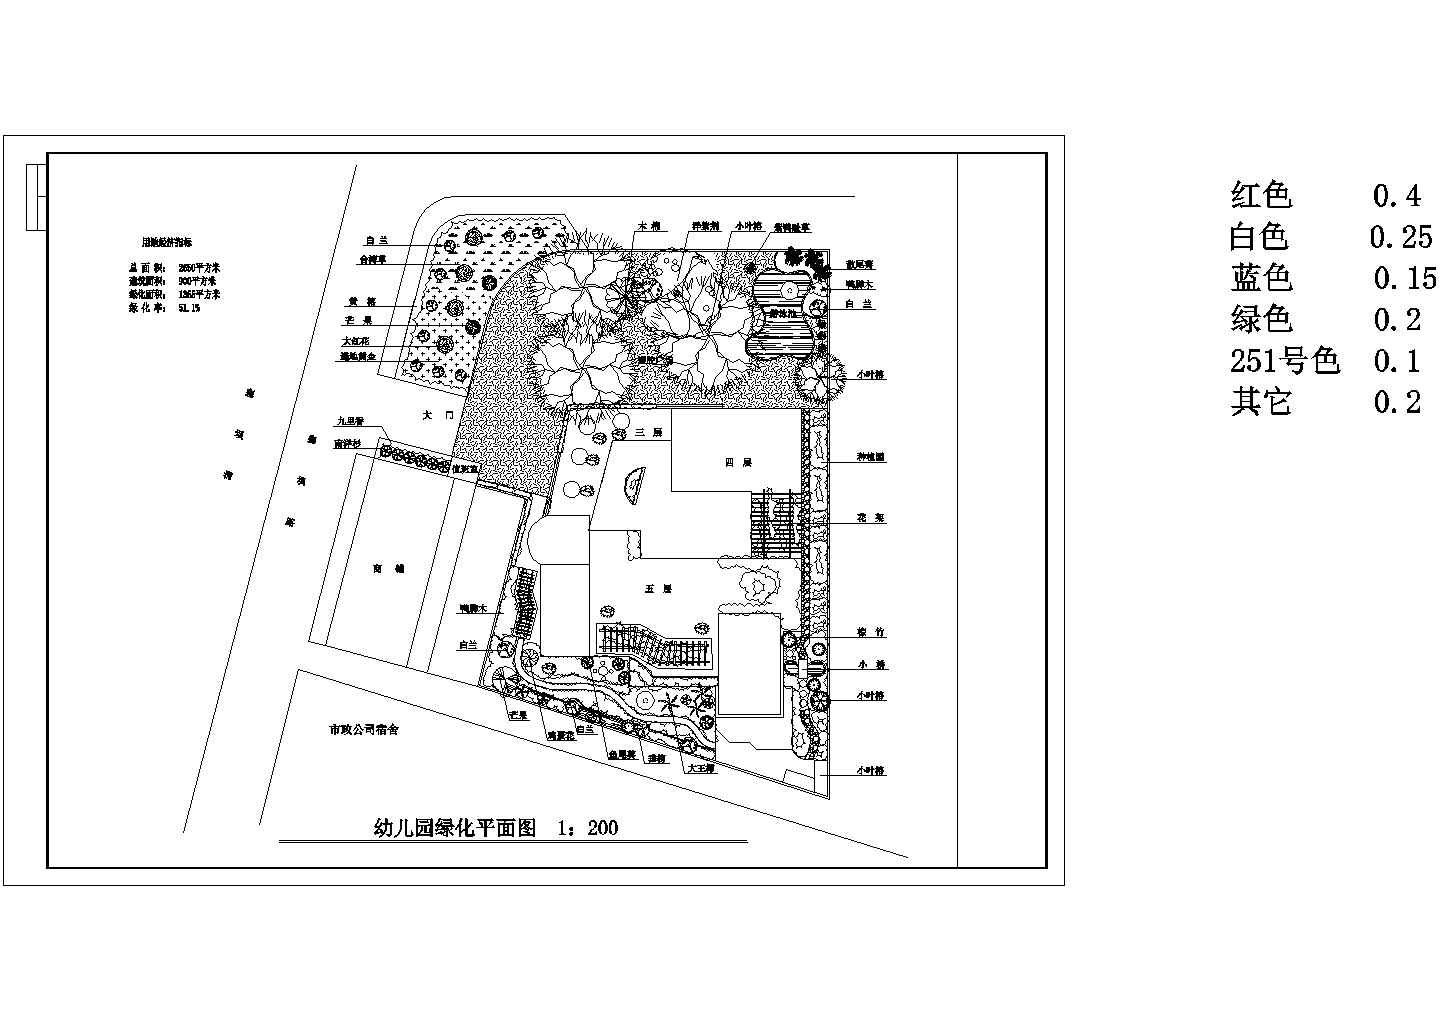 北京某高校附属幼儿园2600平米校区绿化建筑设计CAD图纸